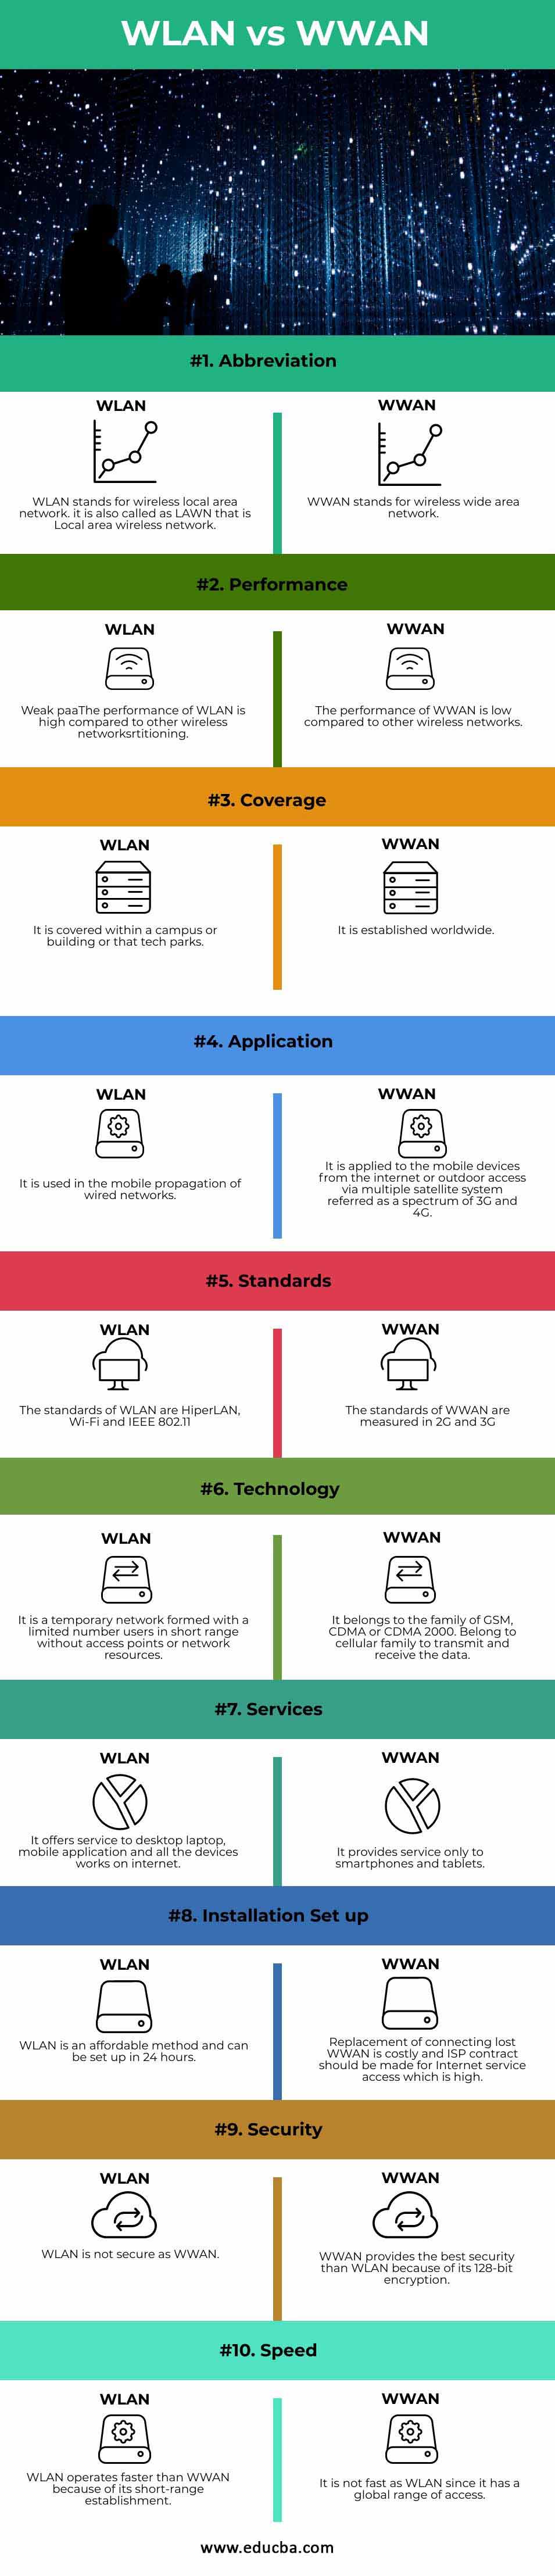 WLAN-vs-WWAN-info